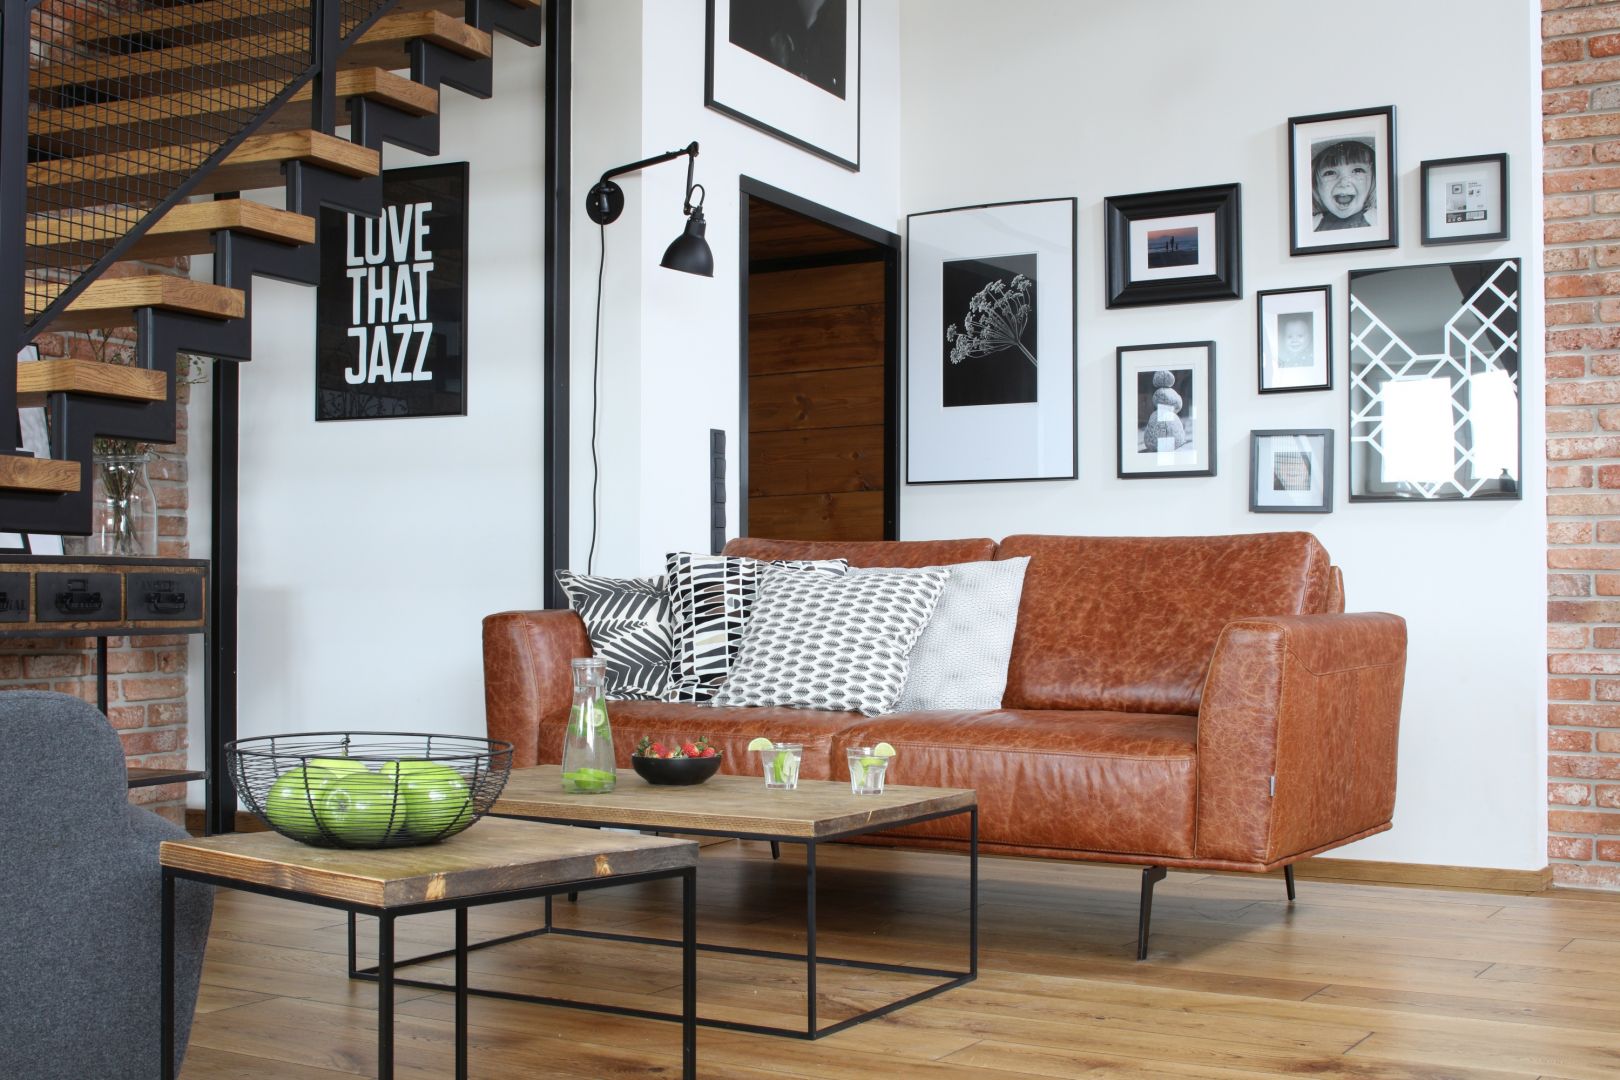 Karmelowa, skórzana sofa podkreśla męski charakter wnętrza. Projekt właściciele. Fot. Bartosz Jarosz